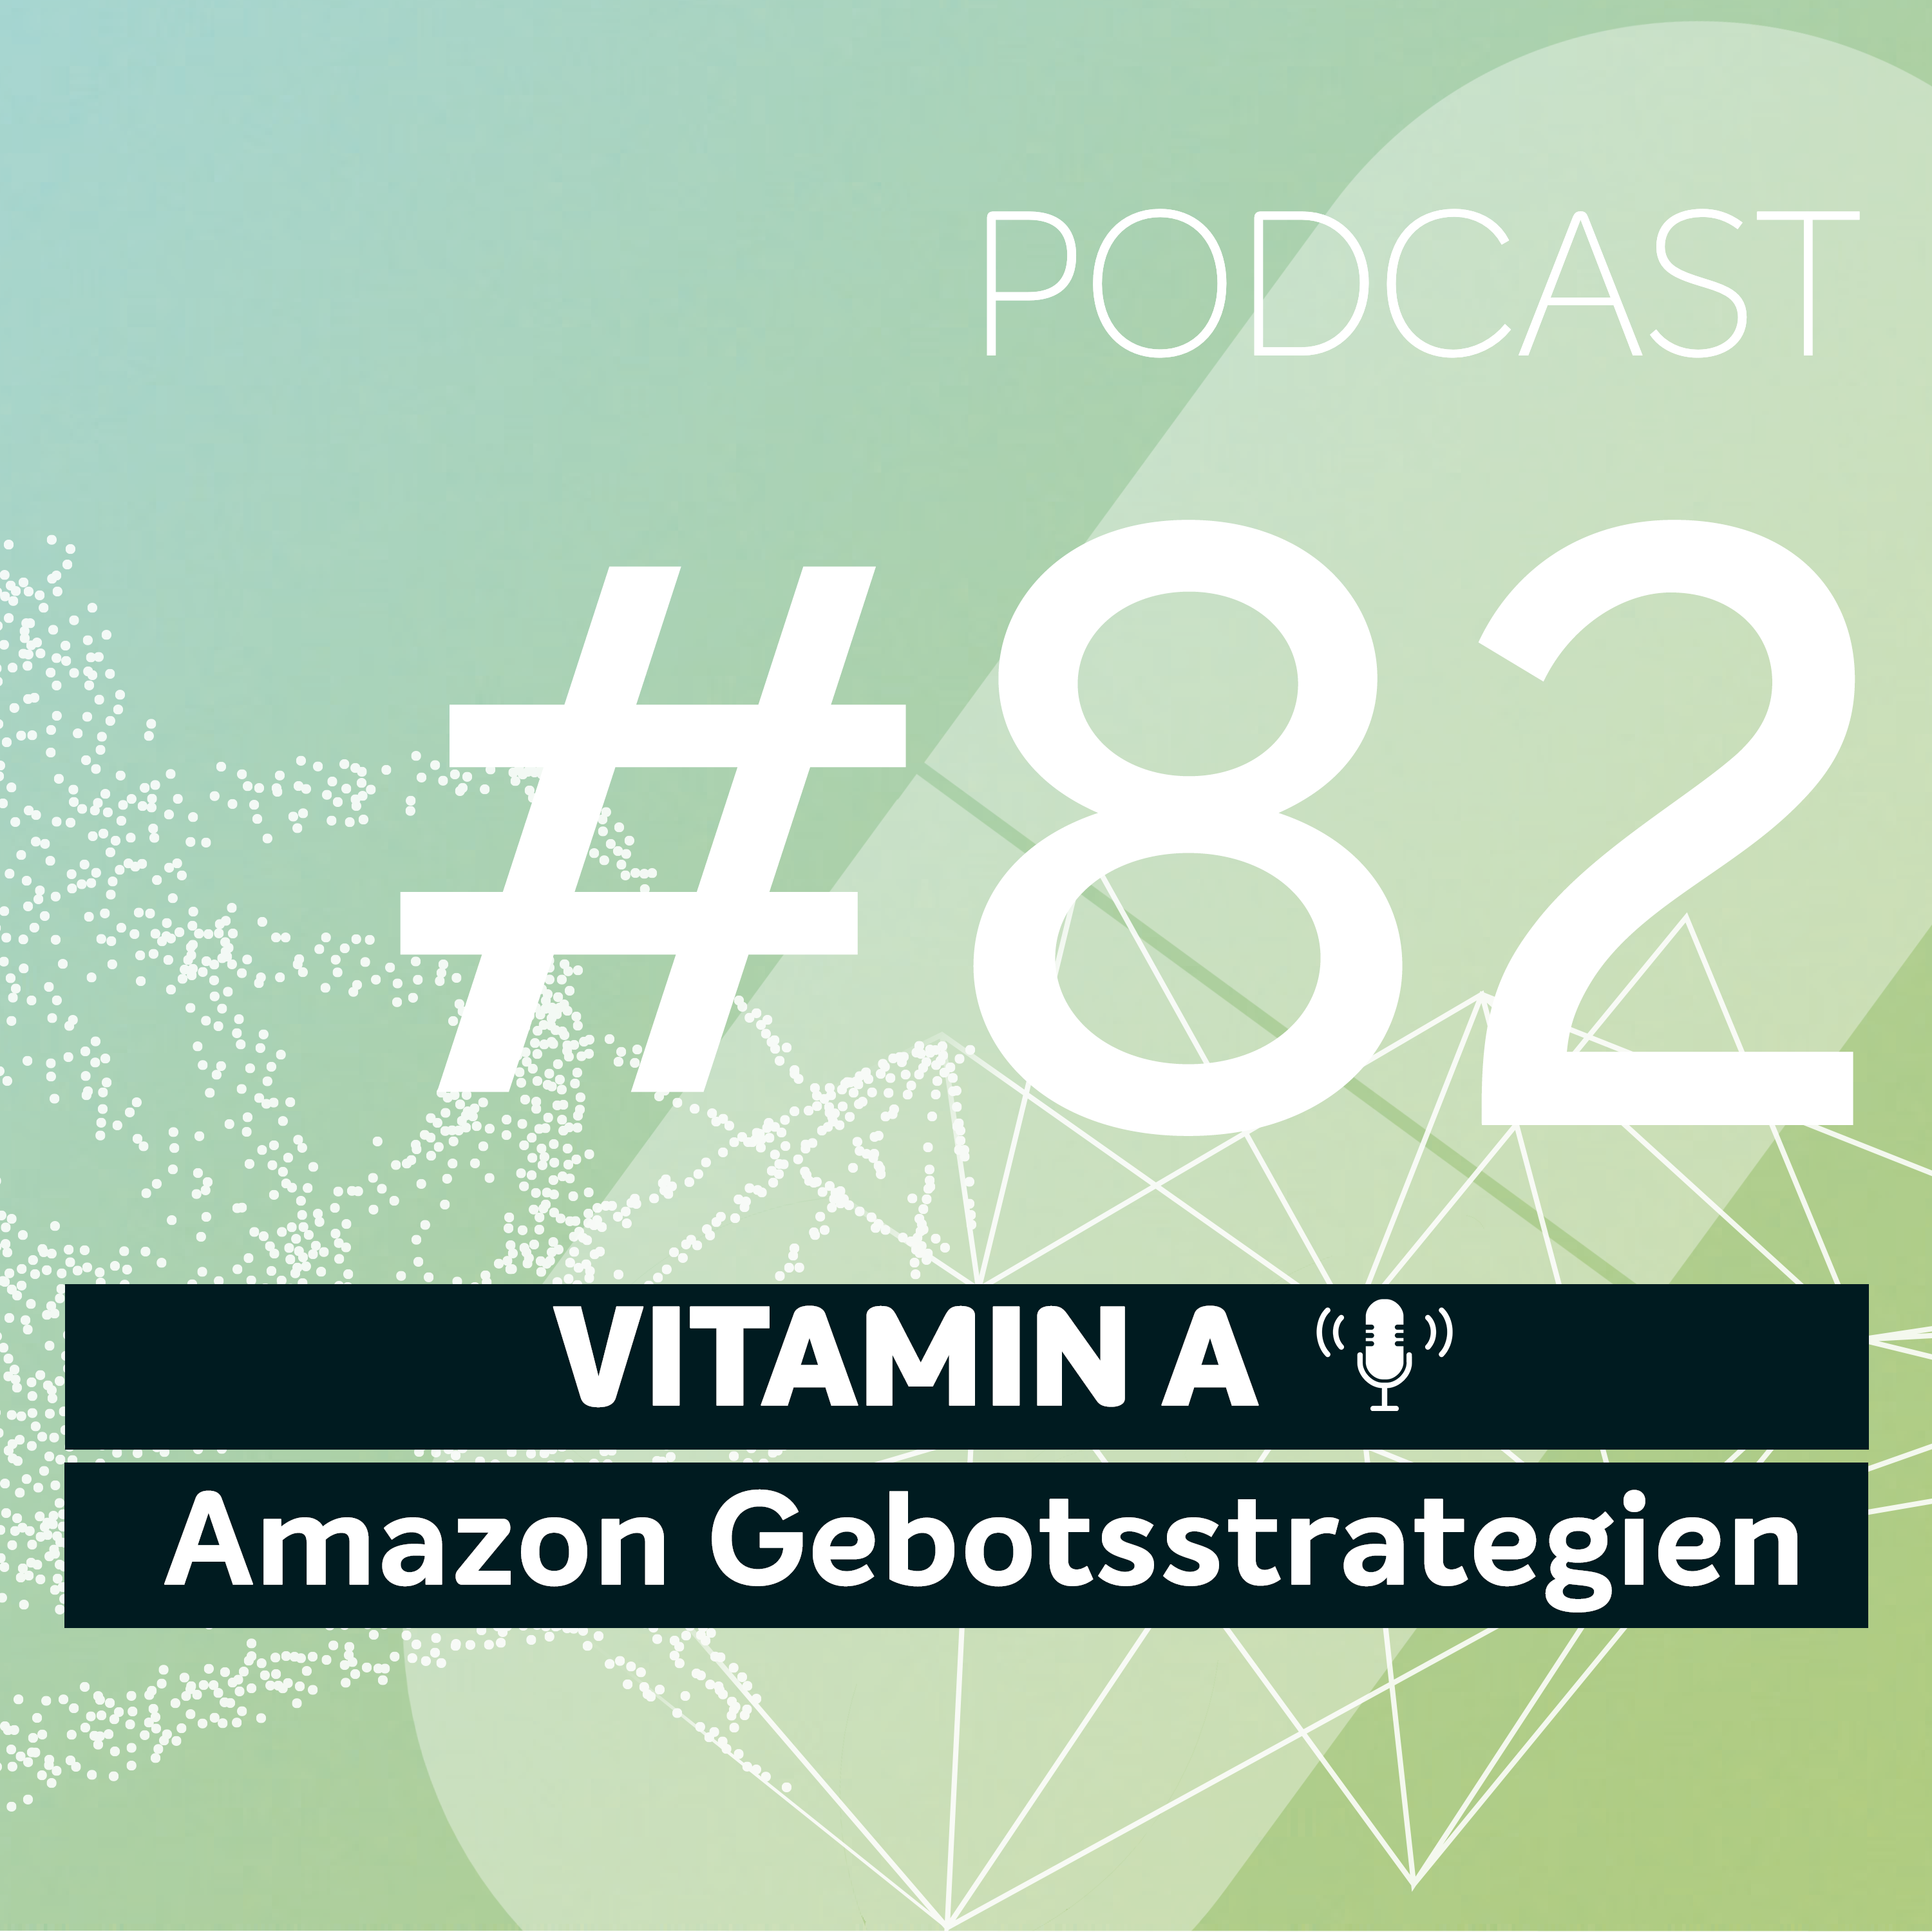 Artwork for podcast Vitamin A - Deine Dosis Amazon PPC